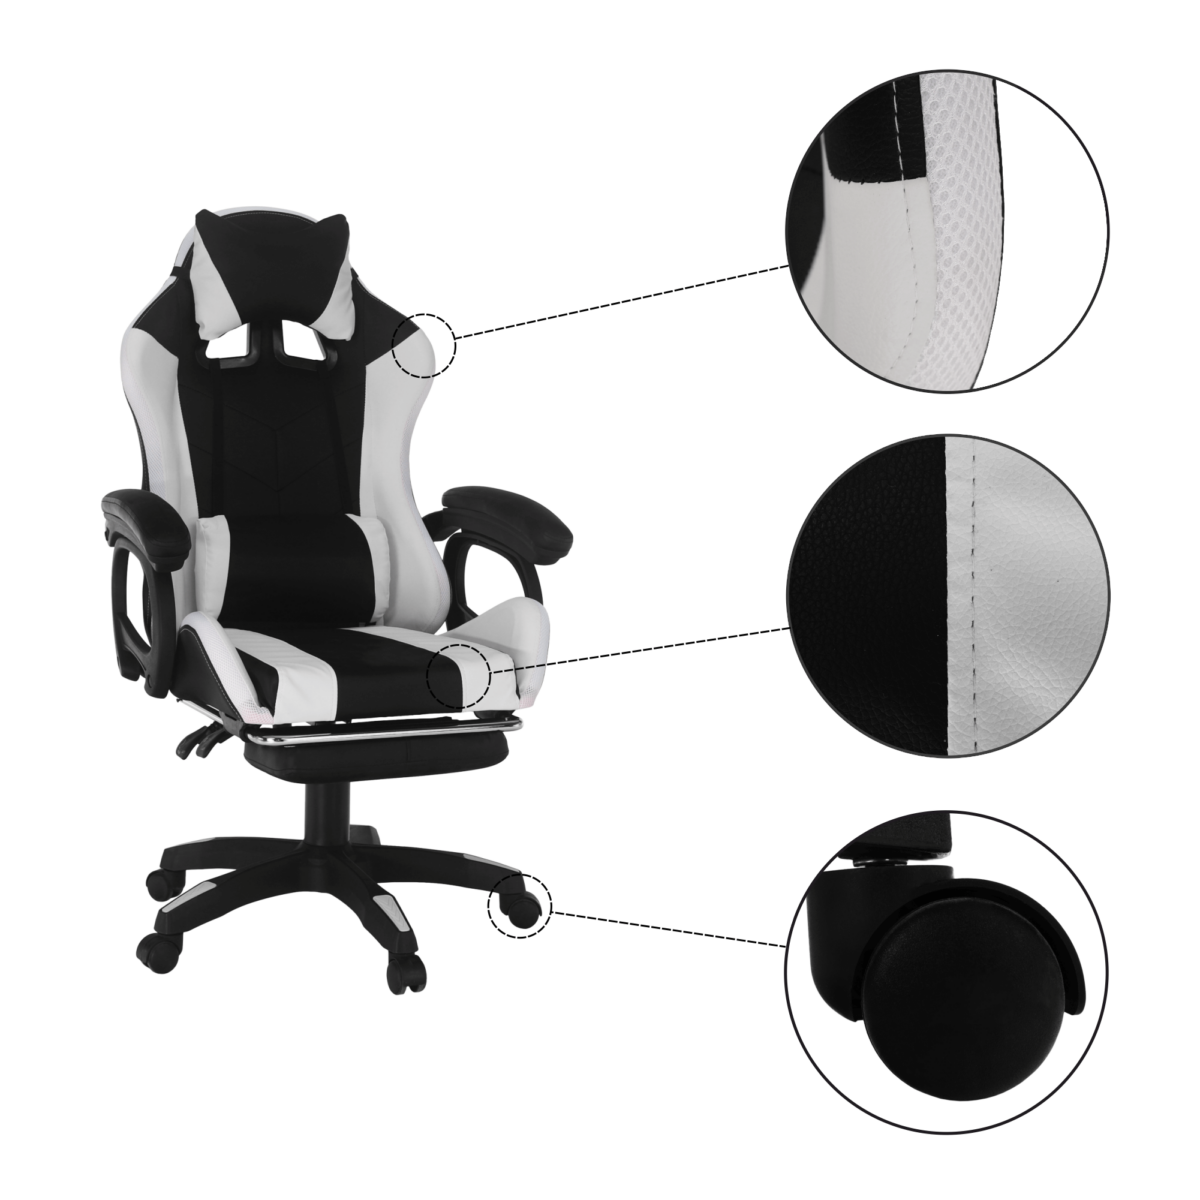 Irodai/gamer szék RGB LED világítással, fekete/fehér, JOVELA